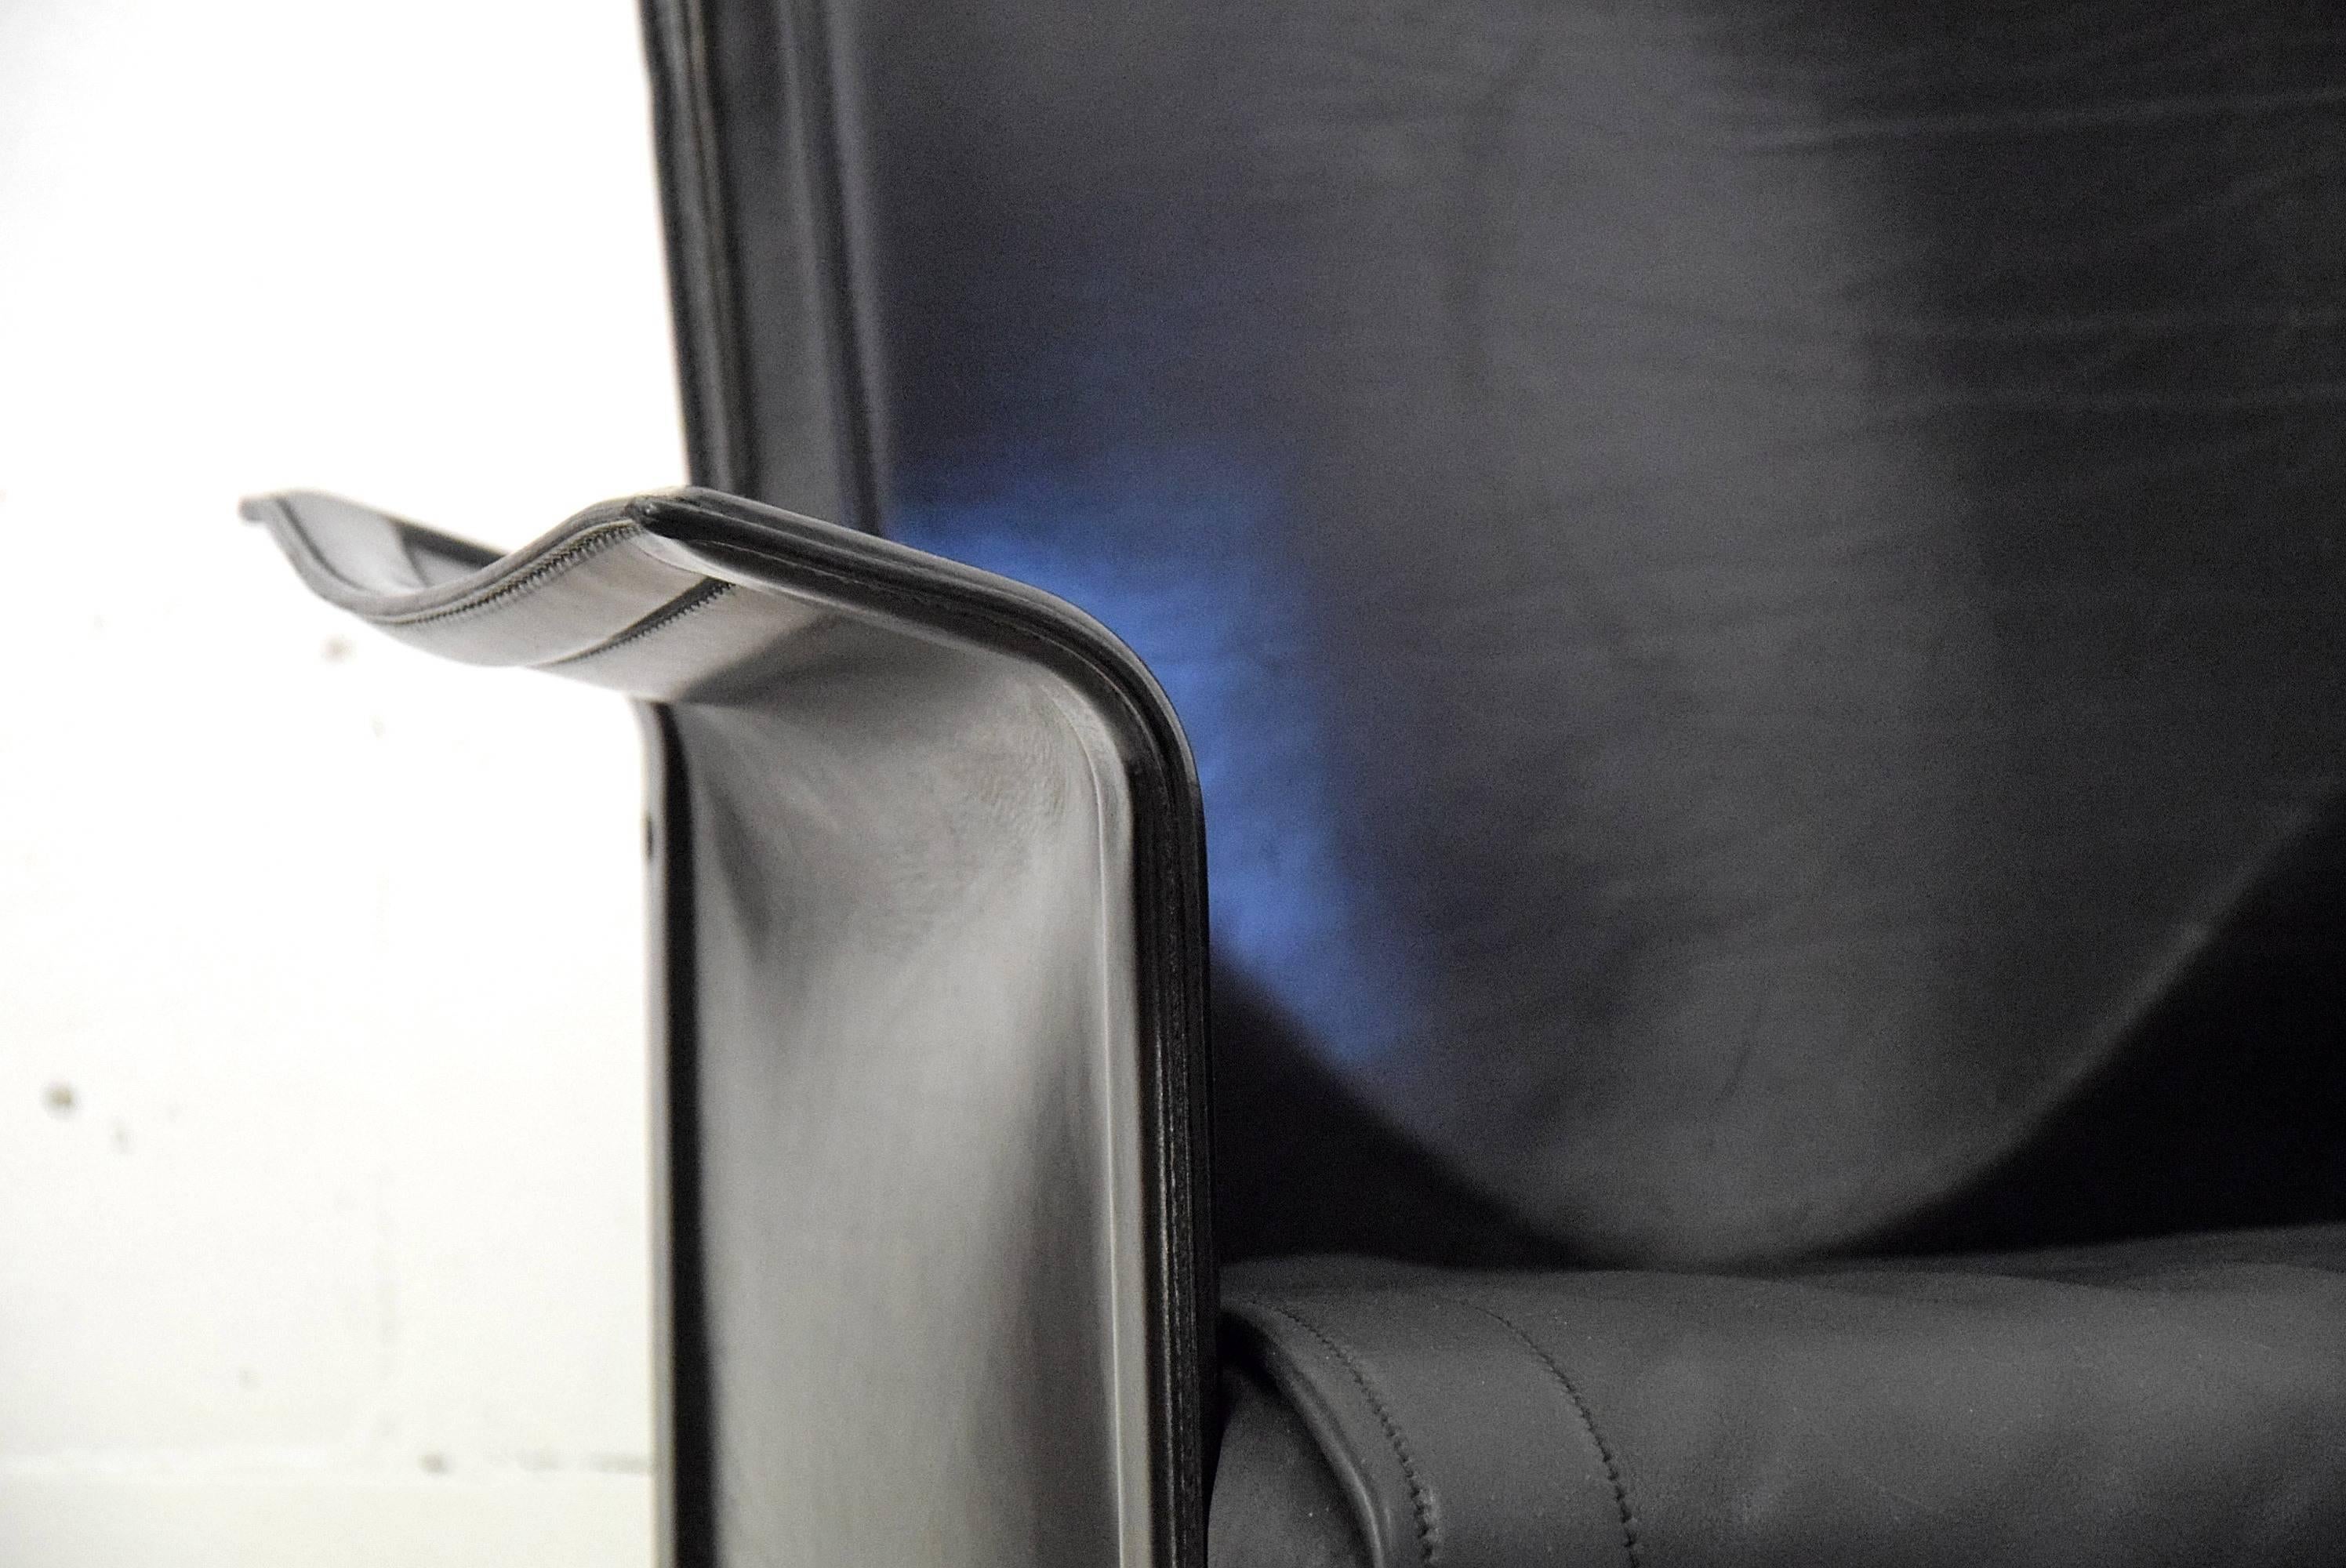 Ledersessel Korium Tito Agnoli für Matteo Grassi.
Anspruchsvoll, stilvoll und sehr bequem ist dieser Korium-Vollledersessel, der von Tito Agnoli in den 1980er Jahren entworfen wurde.

Der Stuhl ist in sehr gutem Zustand.

Der Stuhl wird in einer